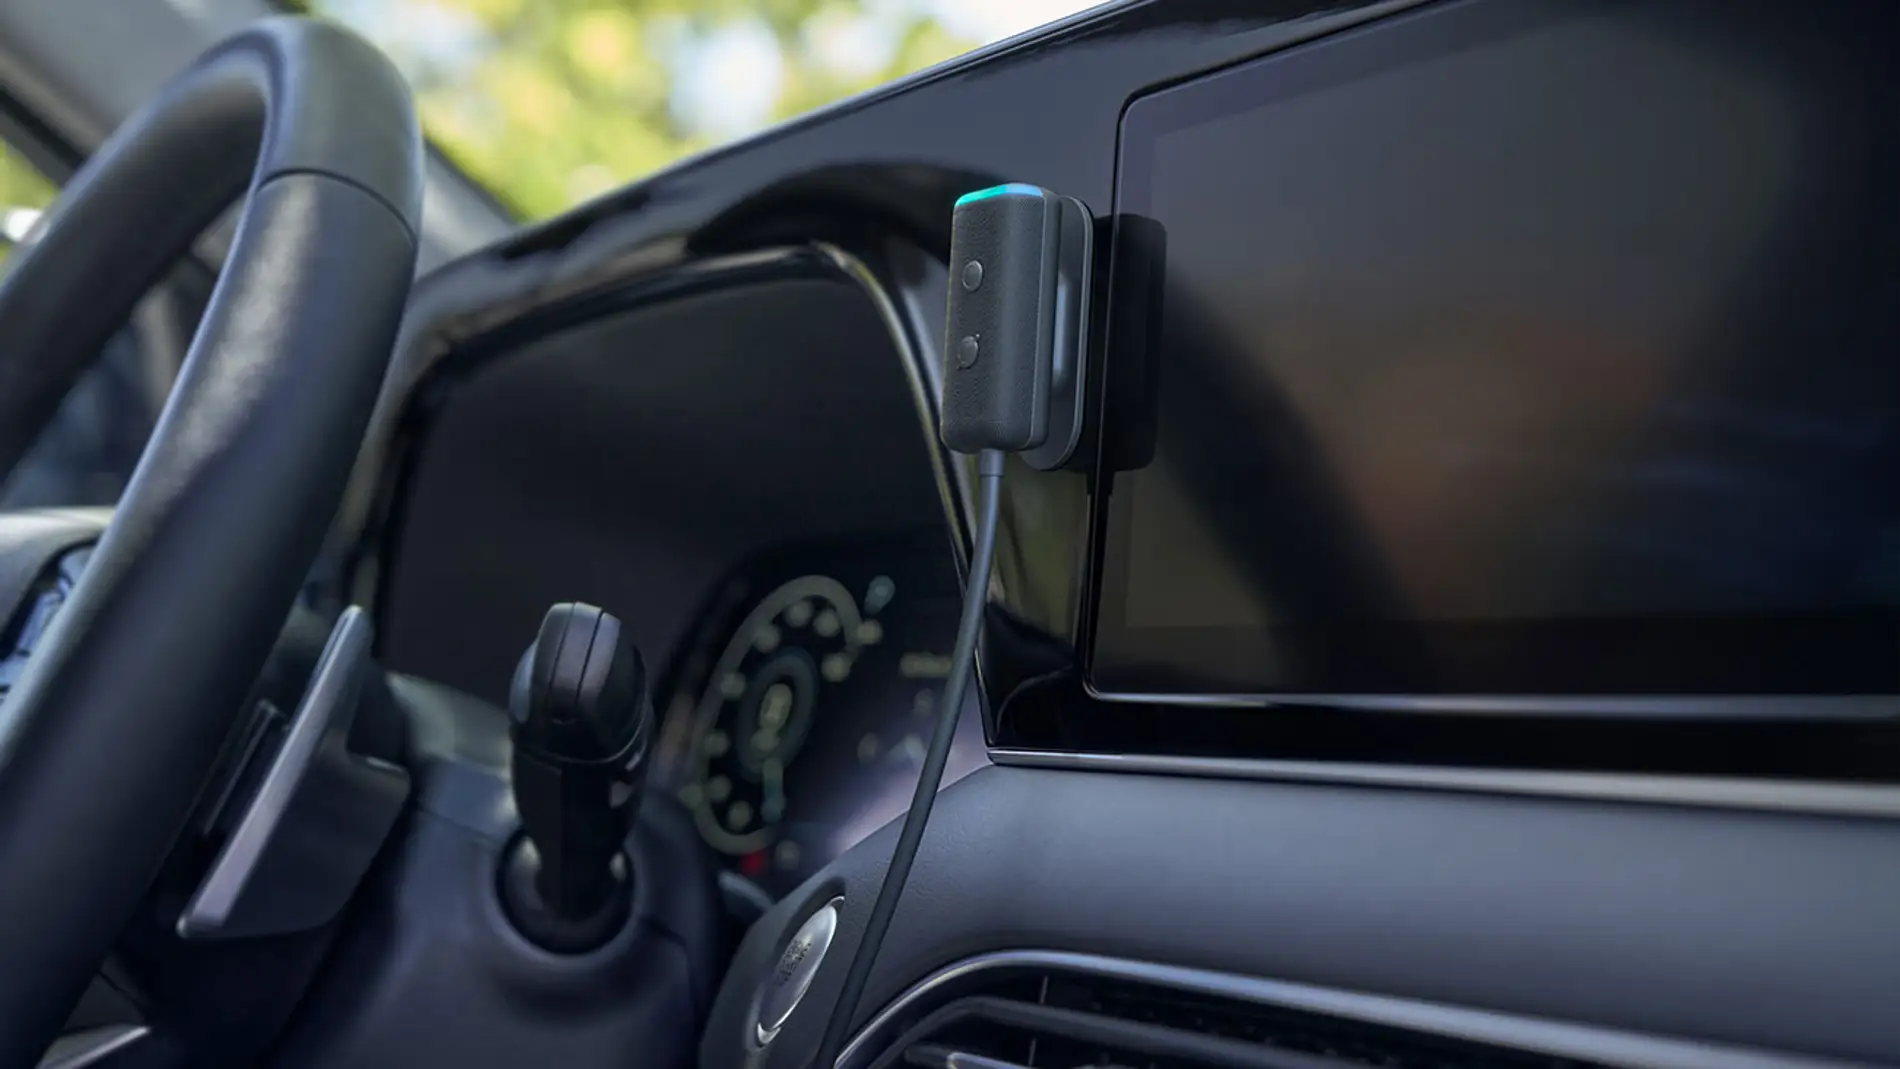 Alexa te acompaña en tus viajes con el nuevo Echo Auto para el coche